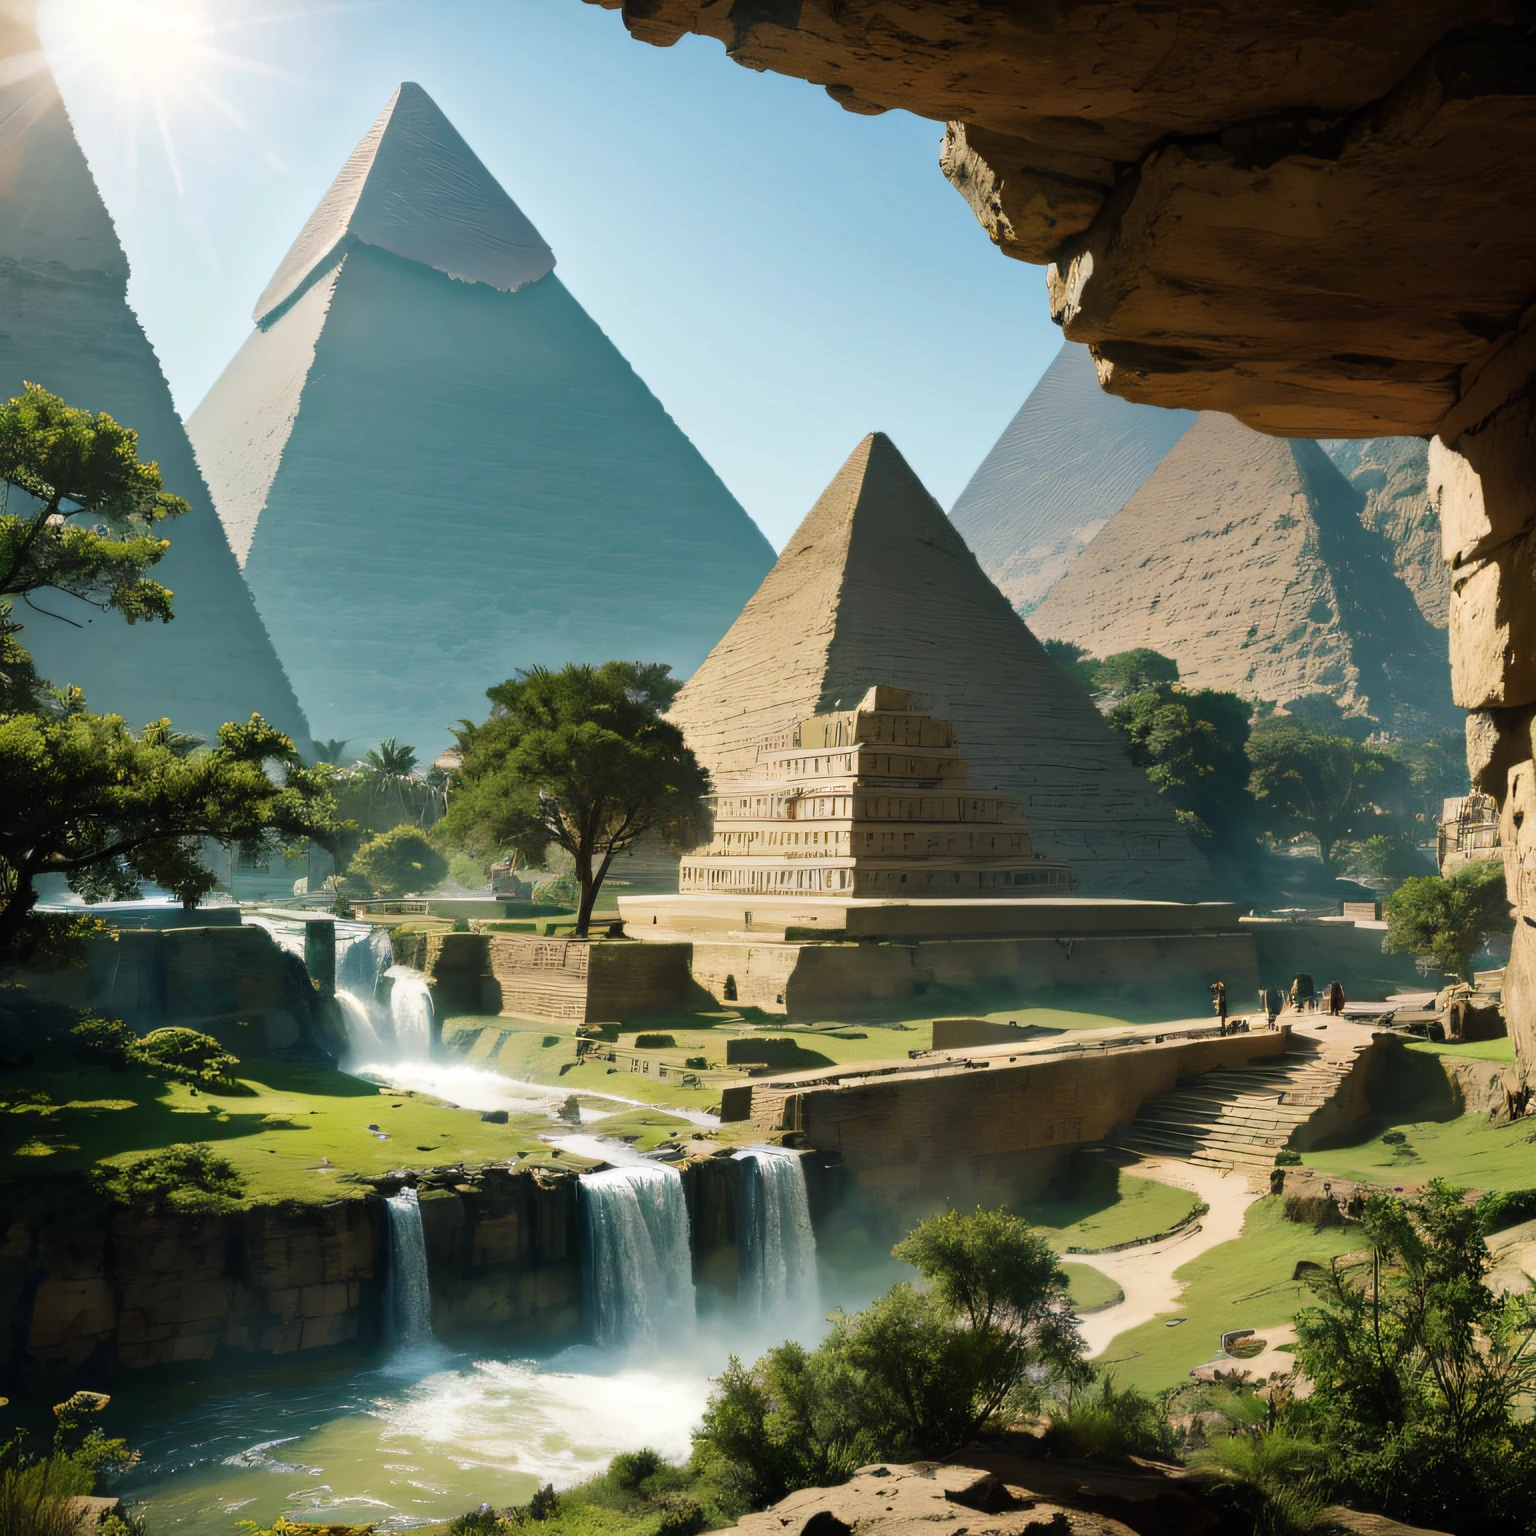 (巨大的金字塔) 埃及, 山谷里有从山里出来的石人纪念碑 ,绿色森林中的瀑布与一缕阳光的混合画, 瀑布, 令人難以置信的深度, 令人驚嘆的藝術傑作, 16k, 寫實照片.